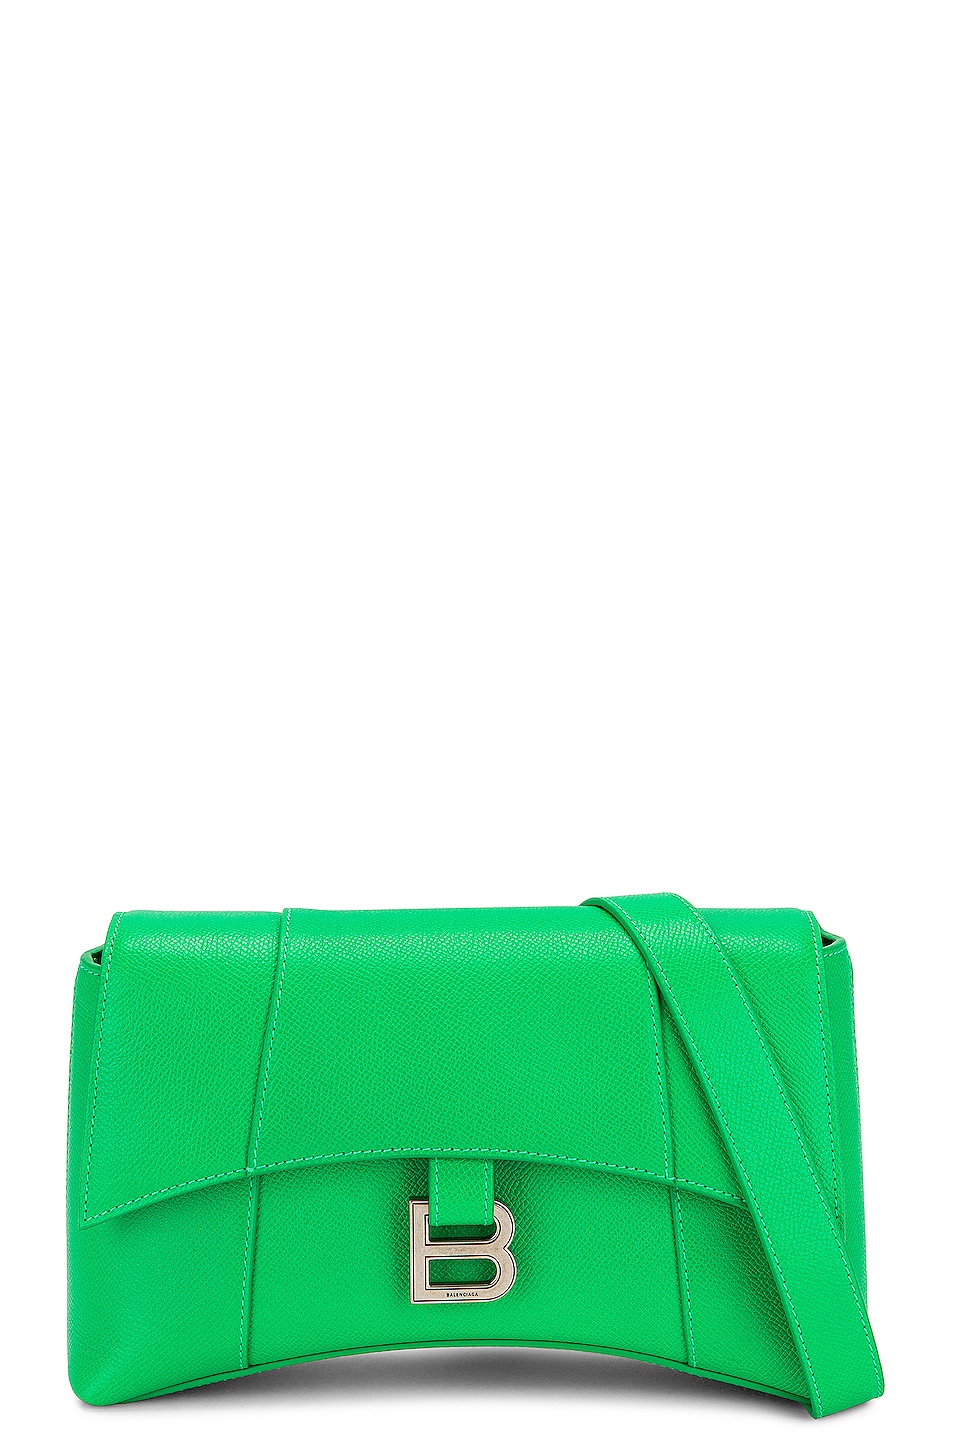 Balenciaga XS Soft Hourglass Shoulder Bag in Green